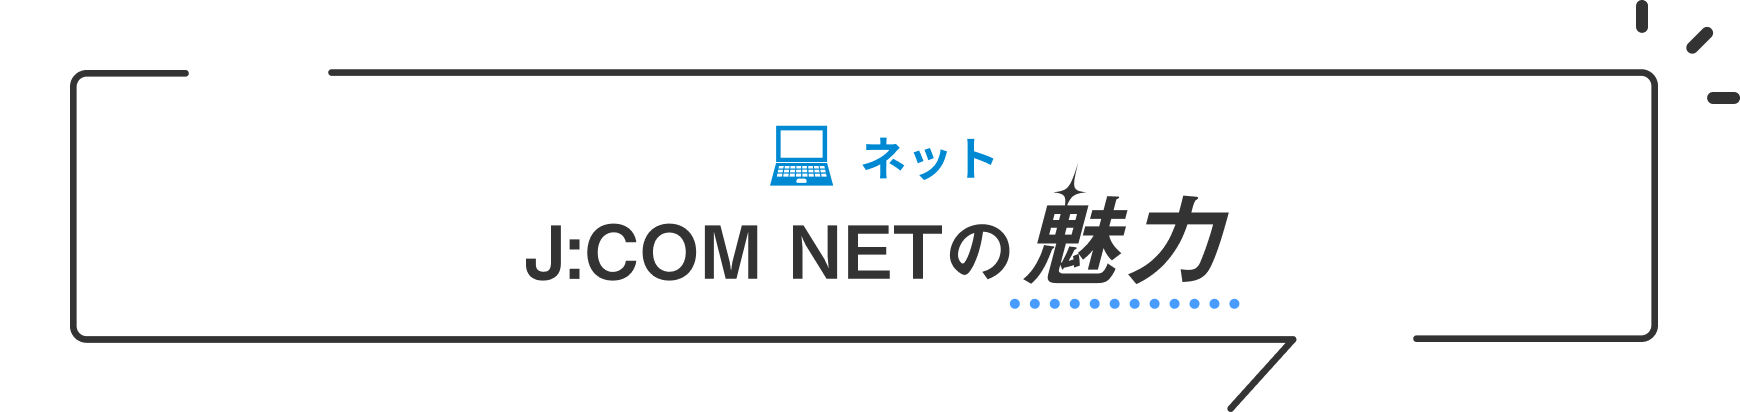 The charm of NET J:COM NET